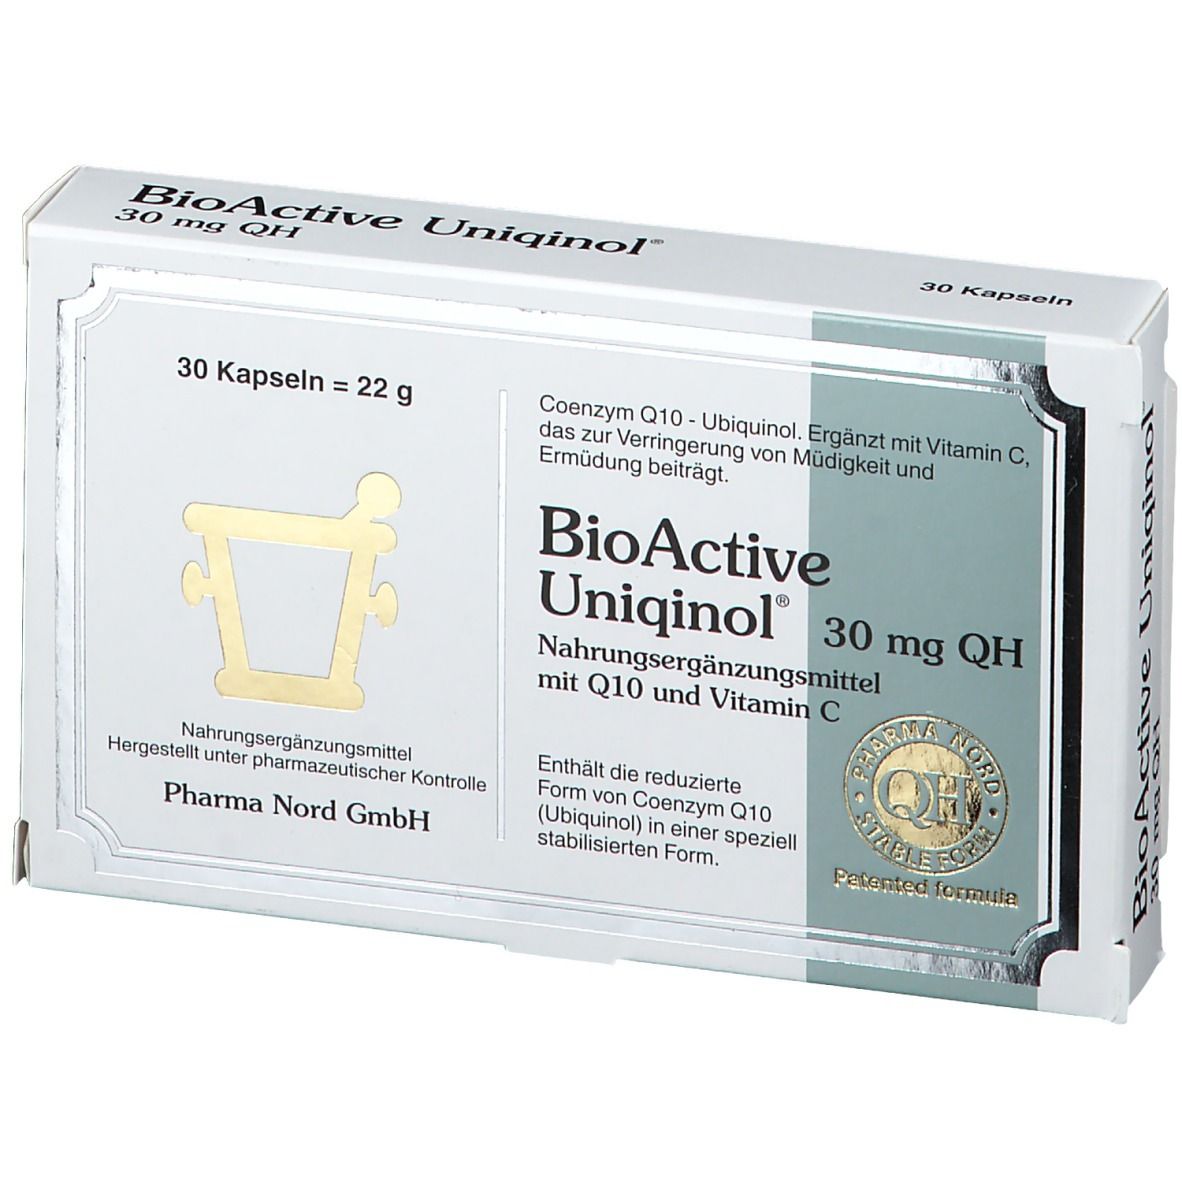 BioActive Uniqinol 30 mg